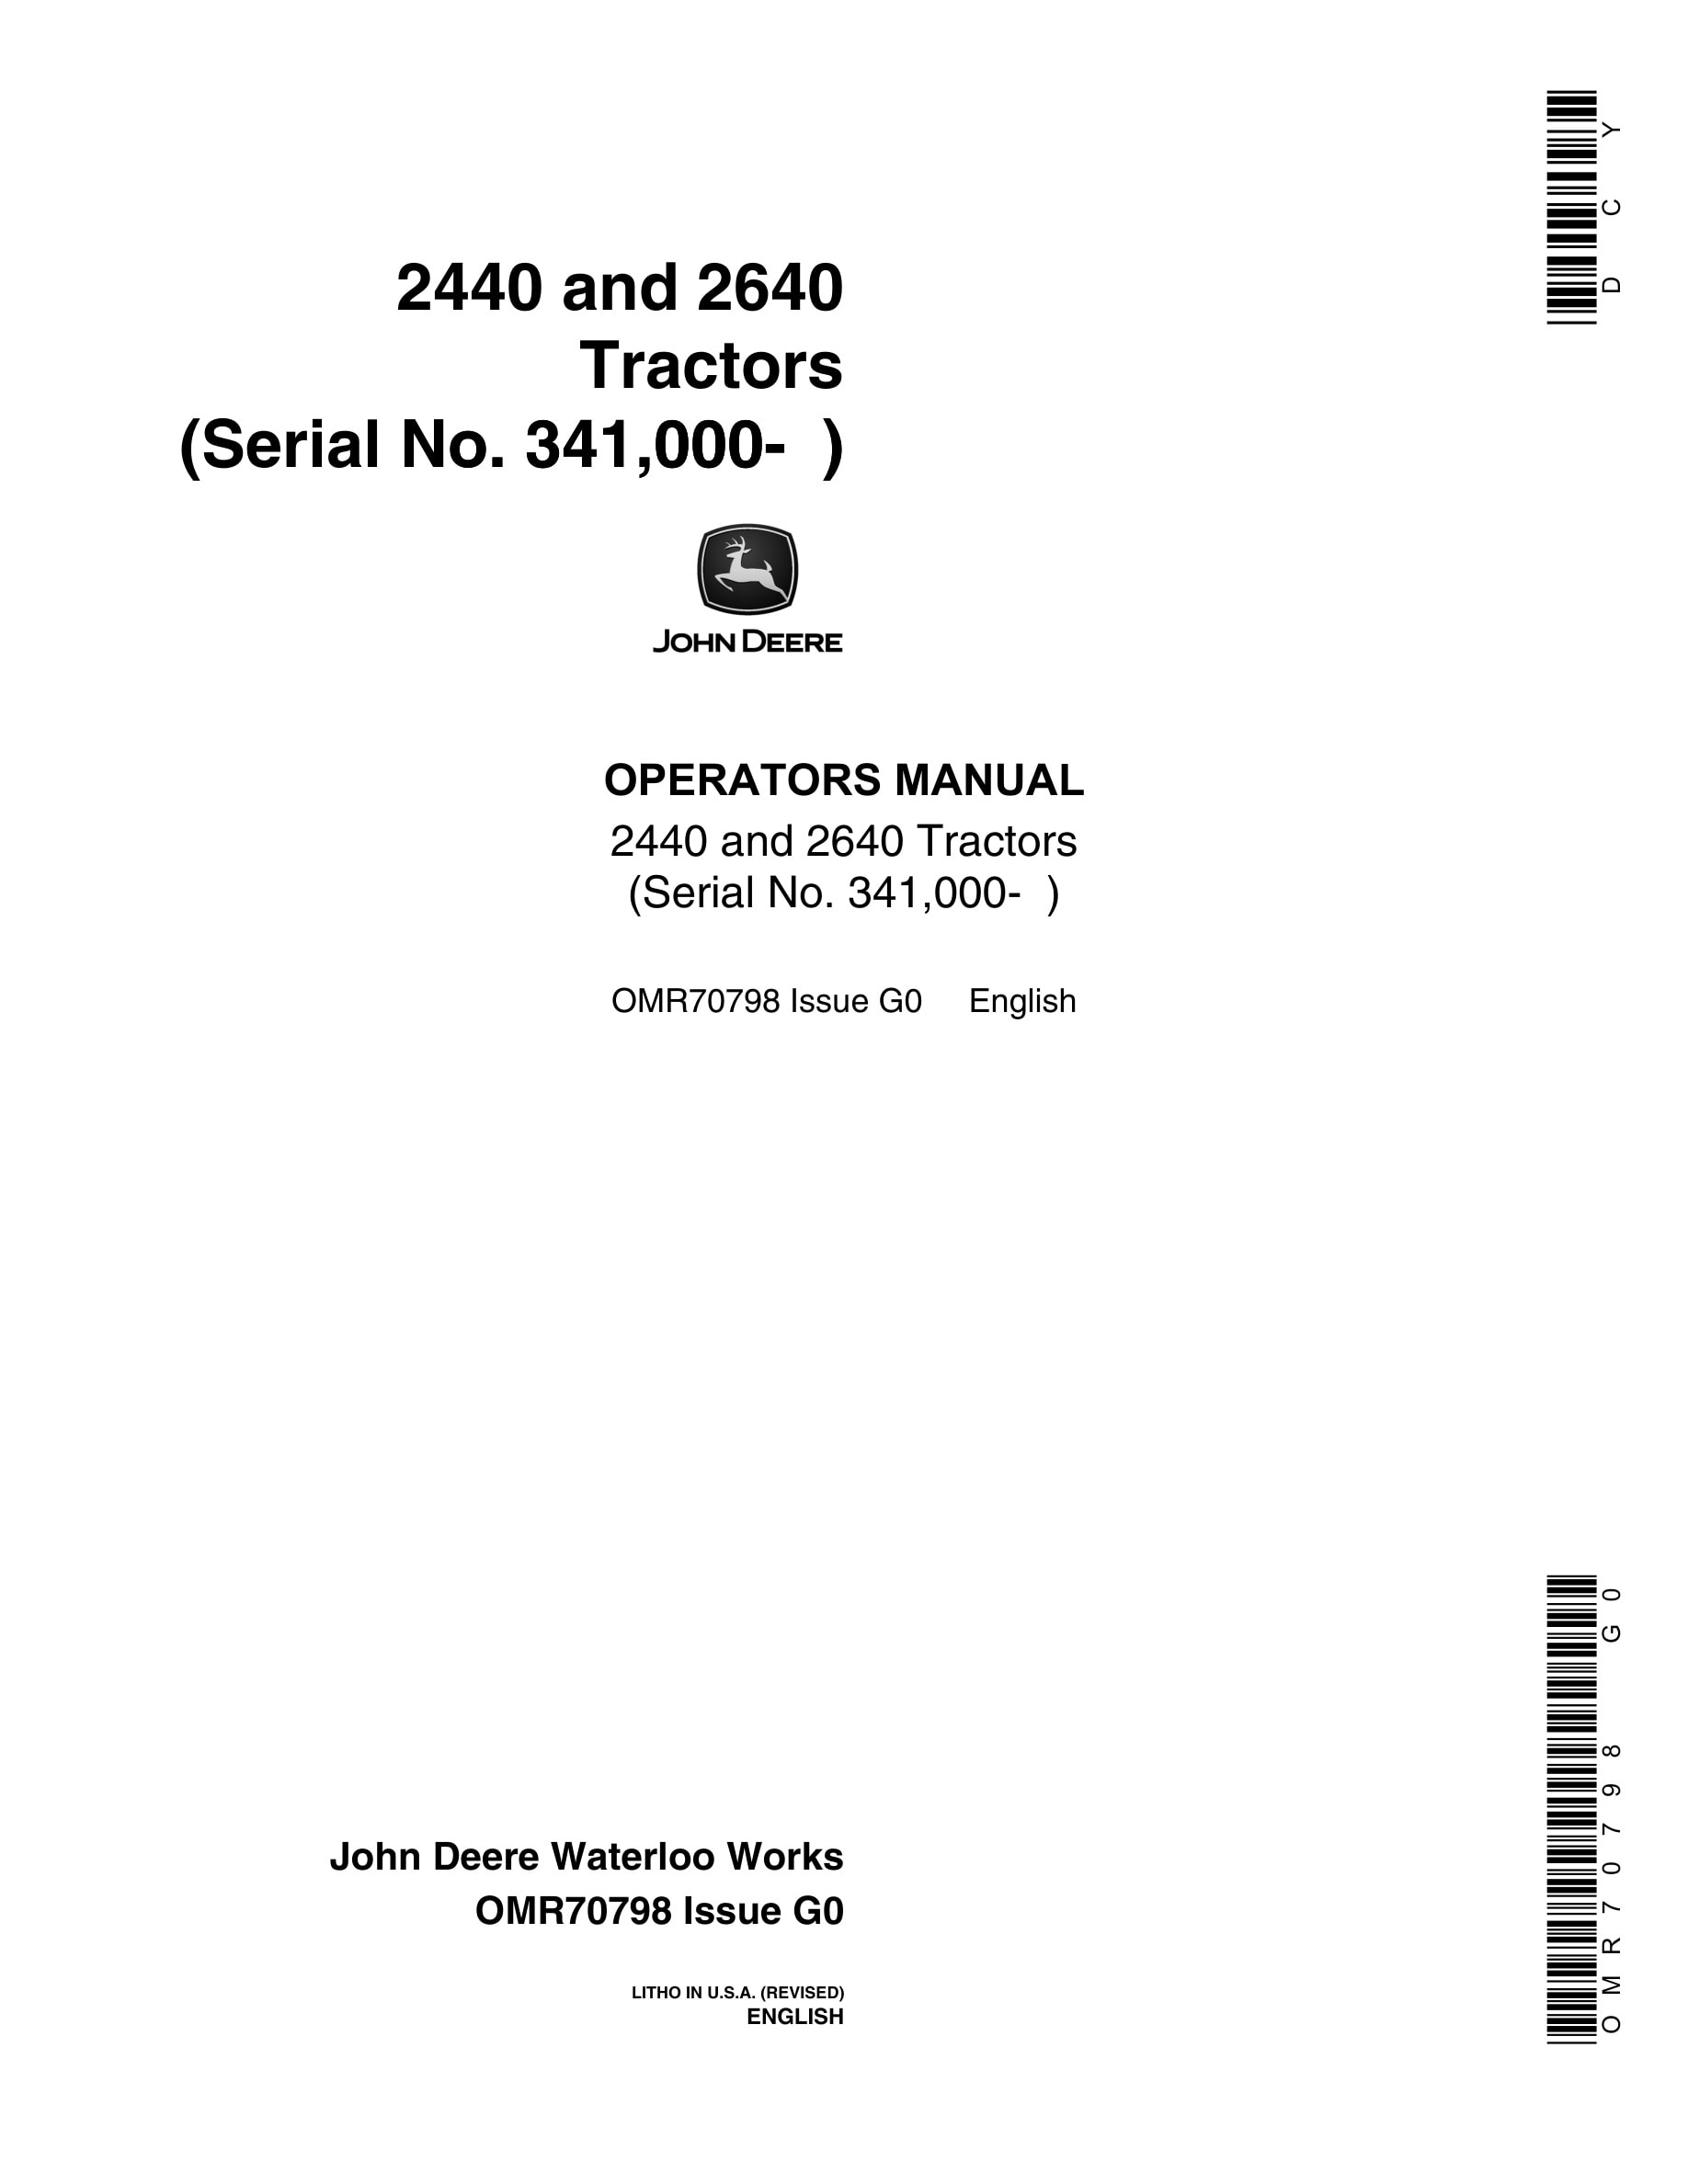 John Deere 2440 and 2640 Tractor Operator Manual OMR70798-1